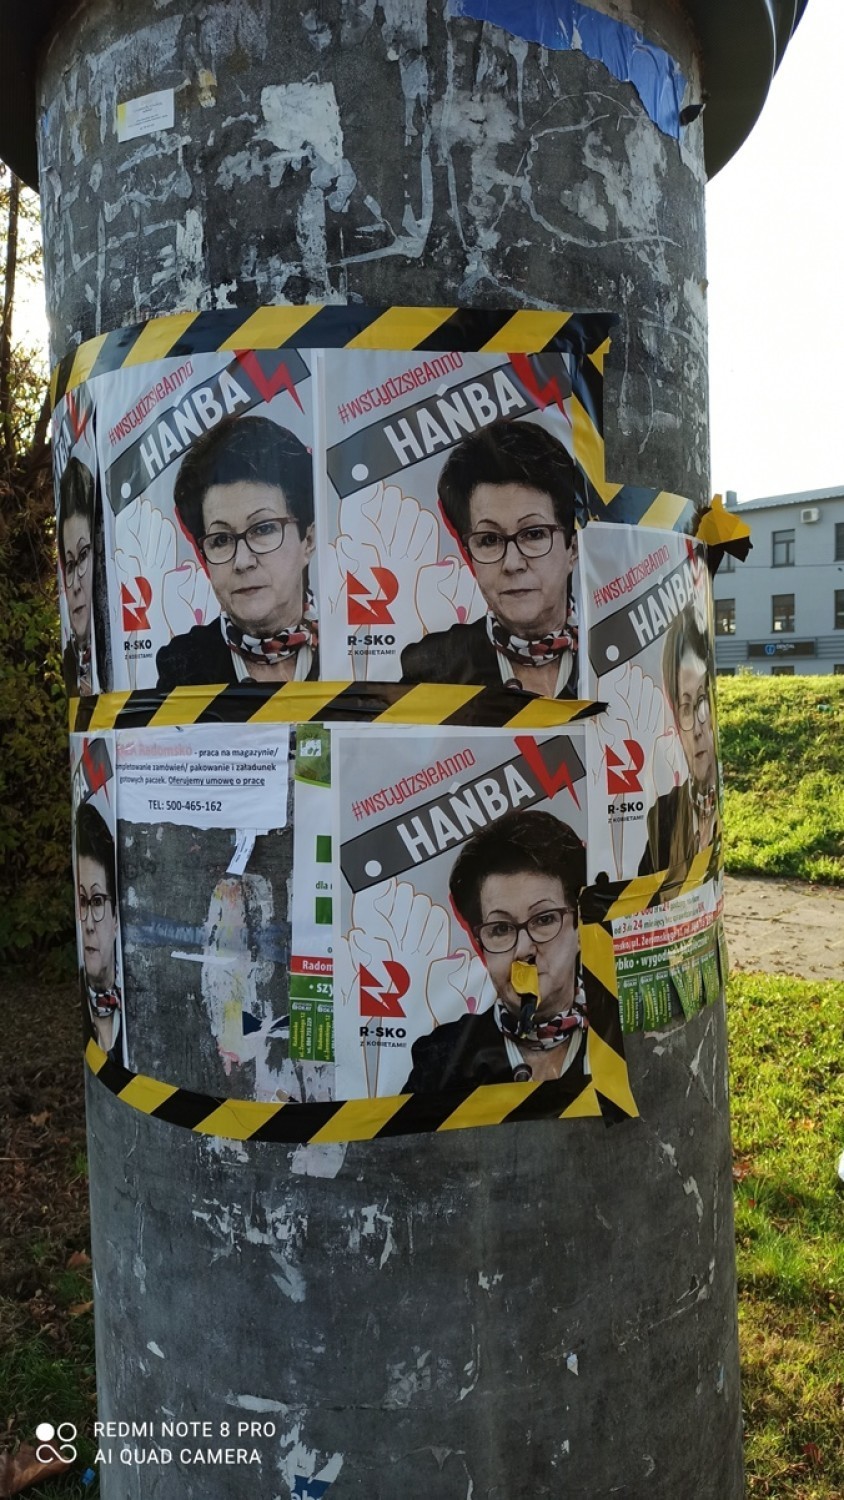 Strajk Kobiet Radomsko 2020: W mieście pojawiły się plakaty...